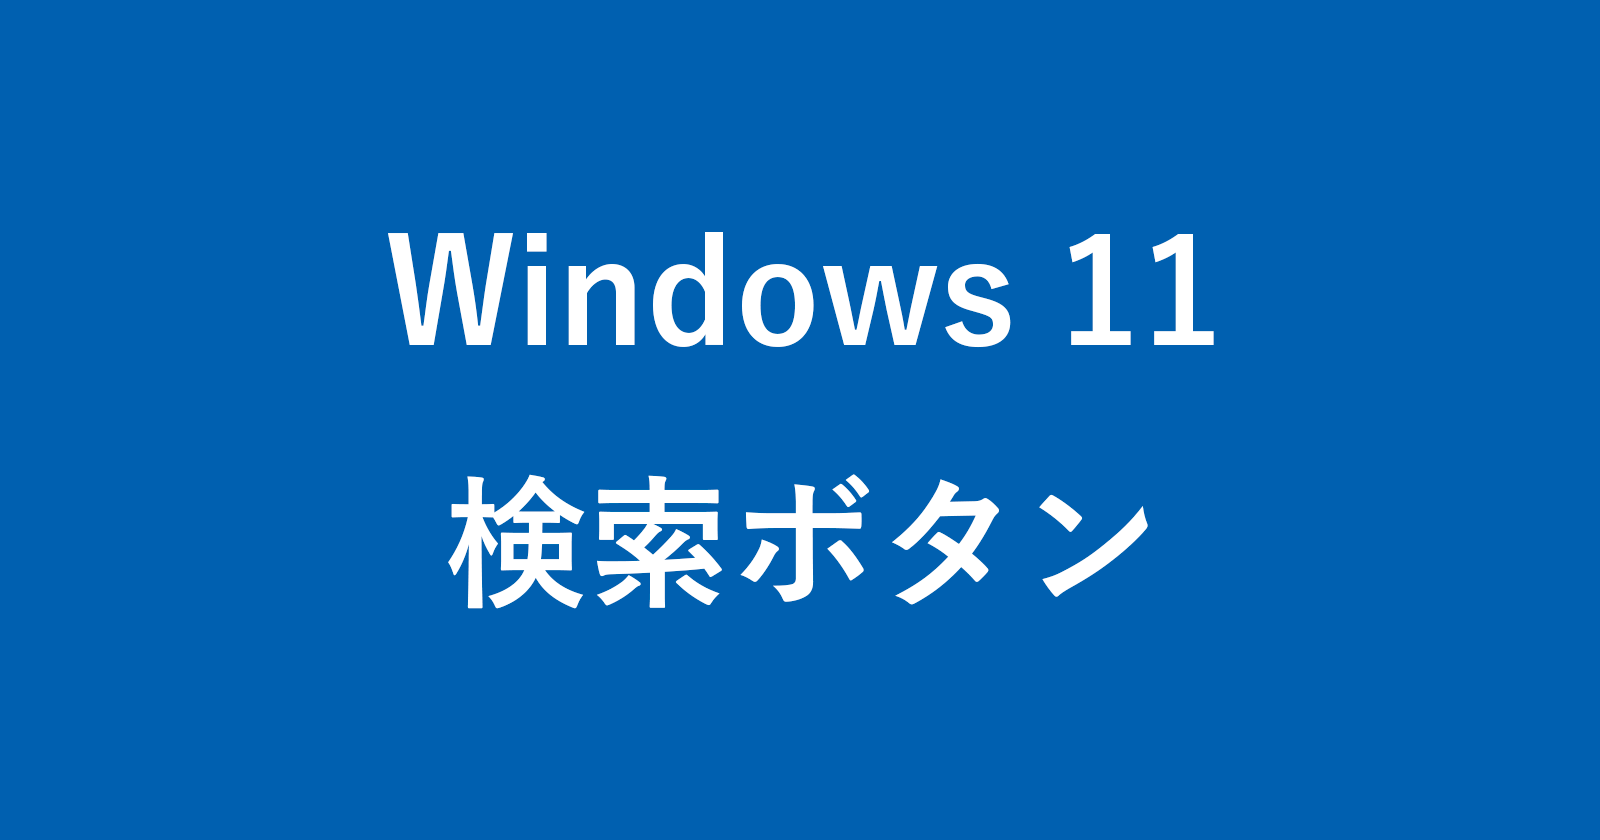 windows 11 search button